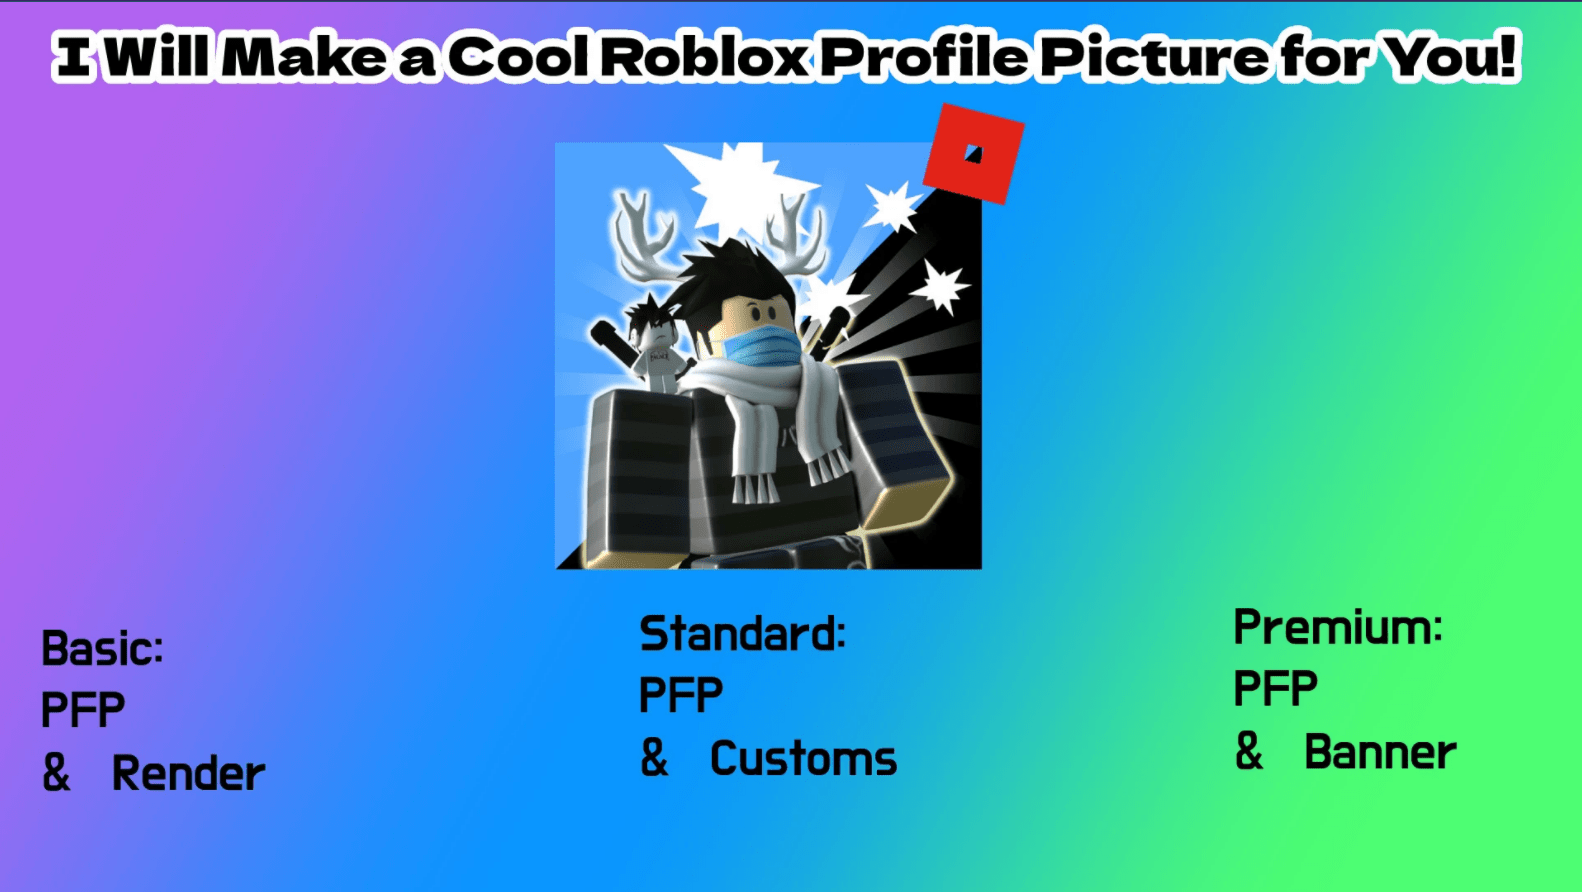 create a simple gfx for a roblox profile picture